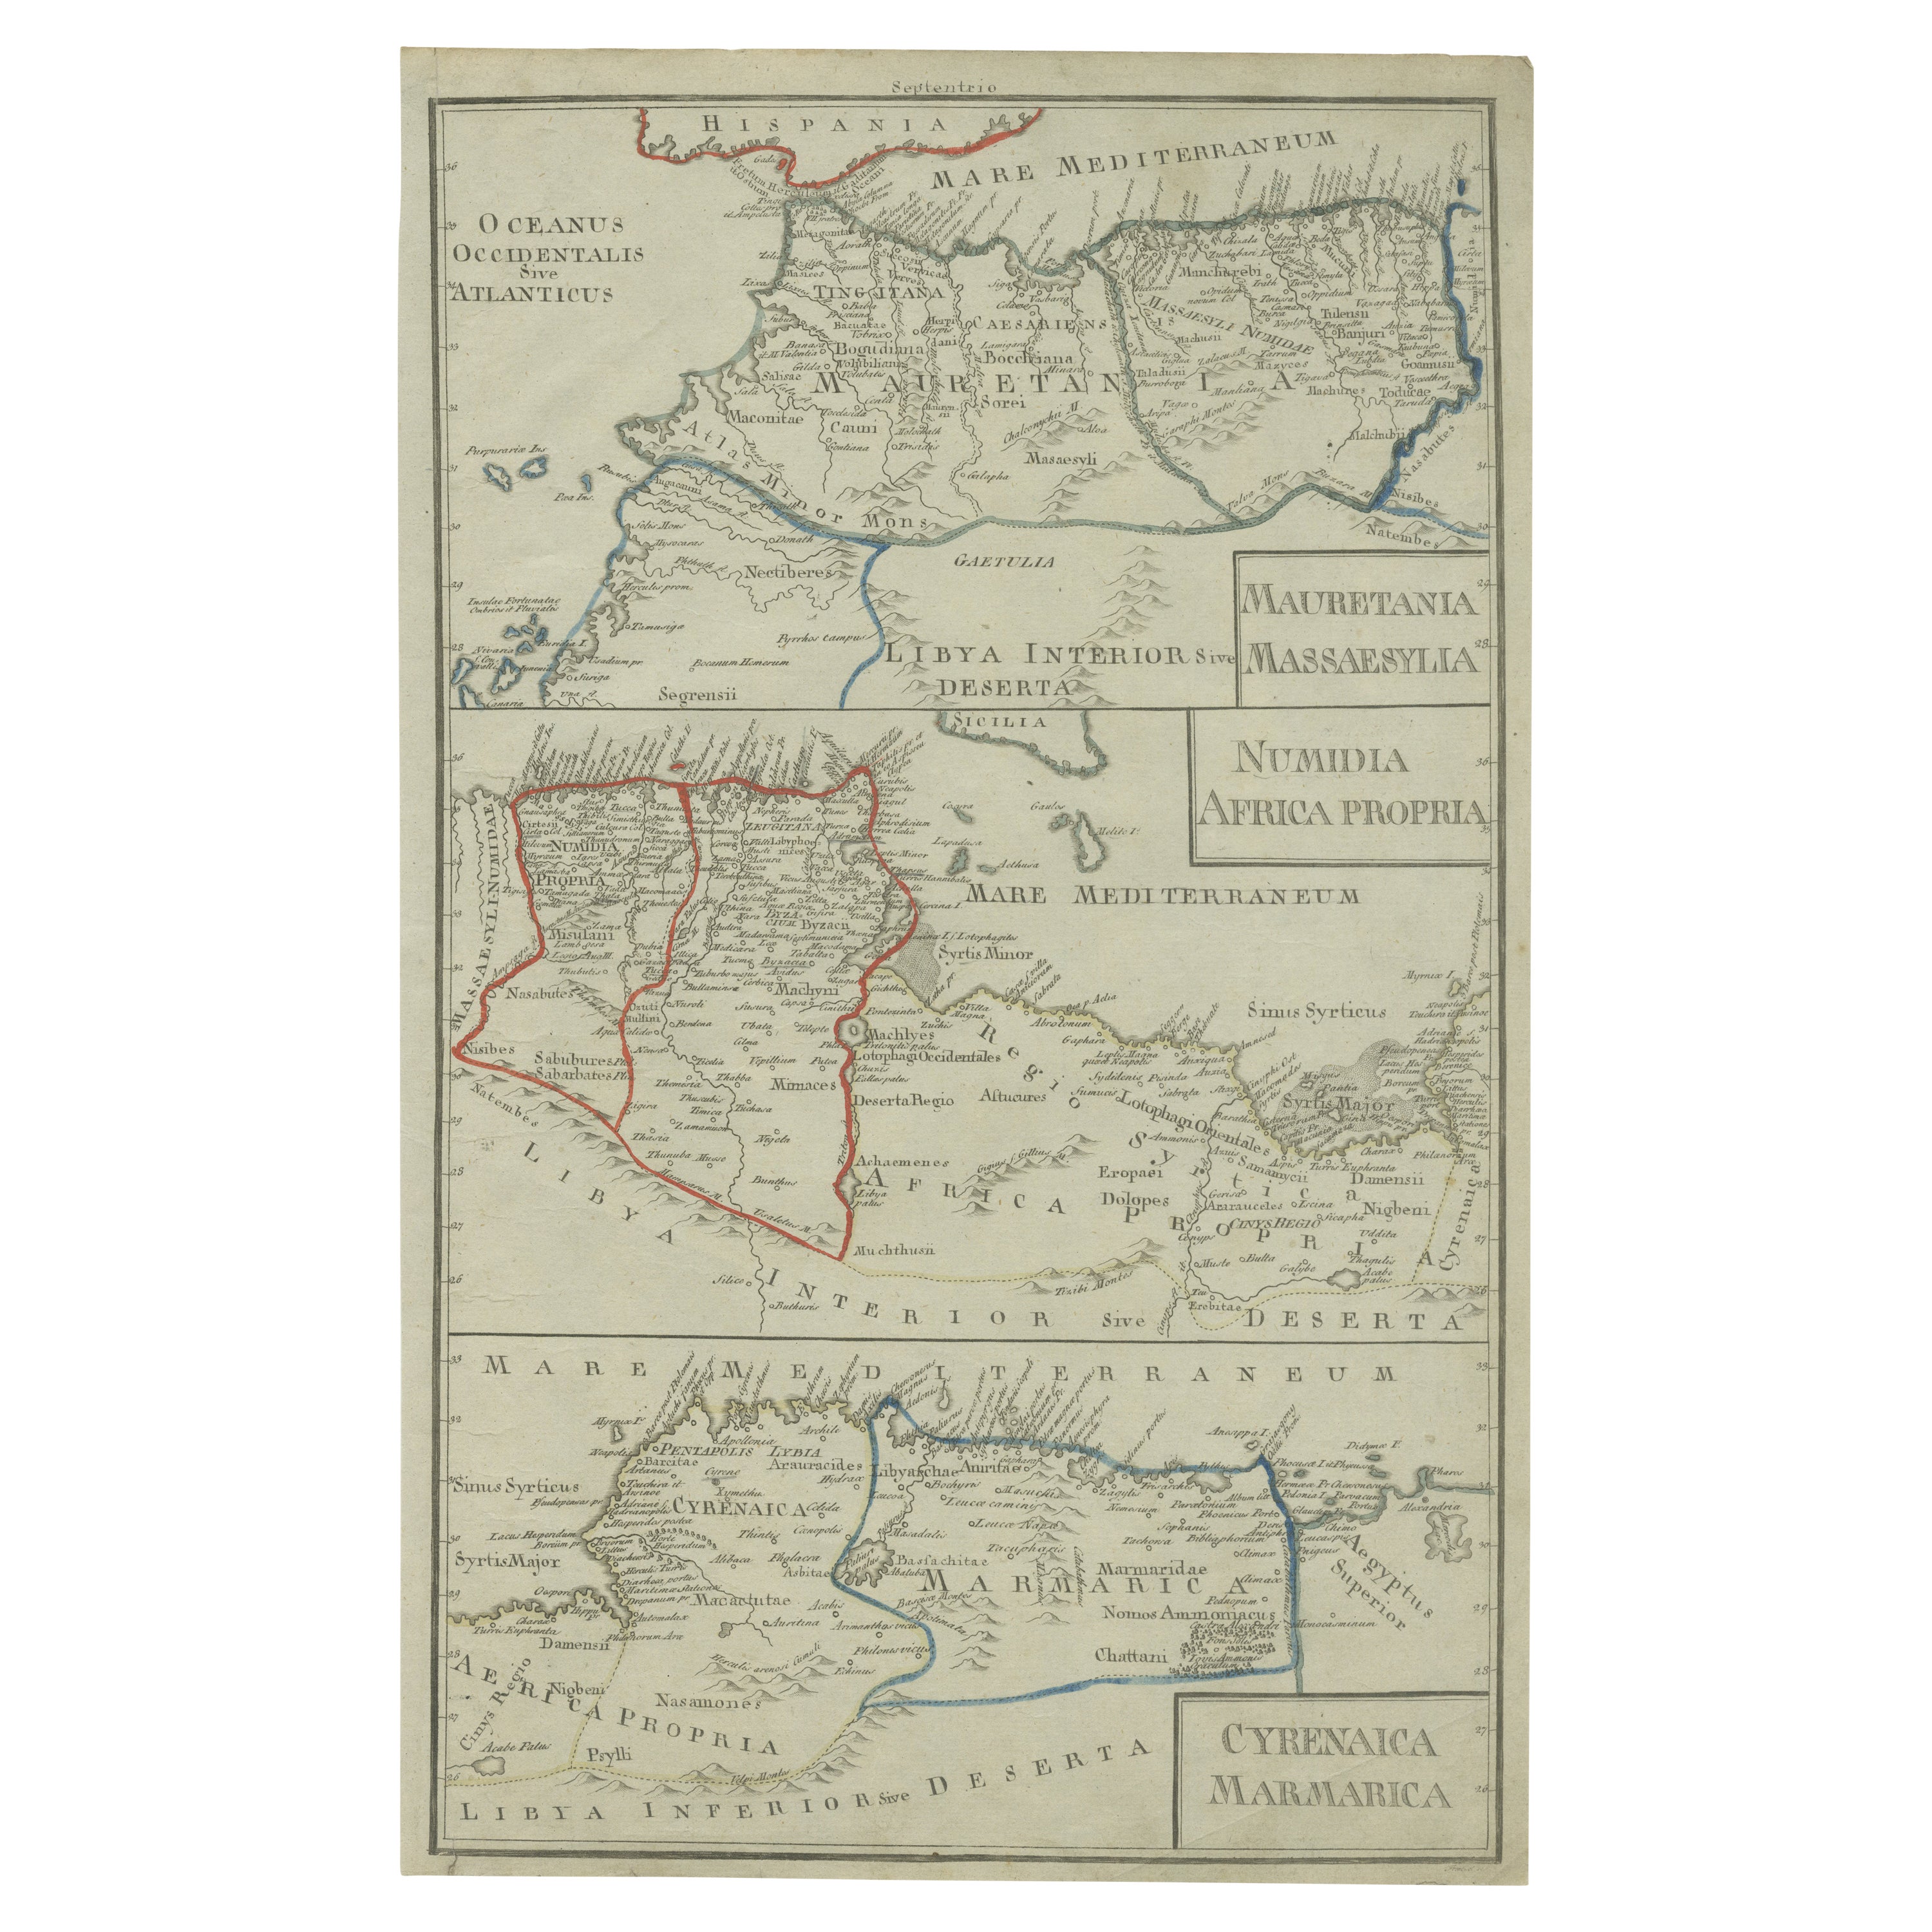 Antique Map of Mauritania, Massaesylia, Numidia, Tunisia, Cyrenaica & Marmarica